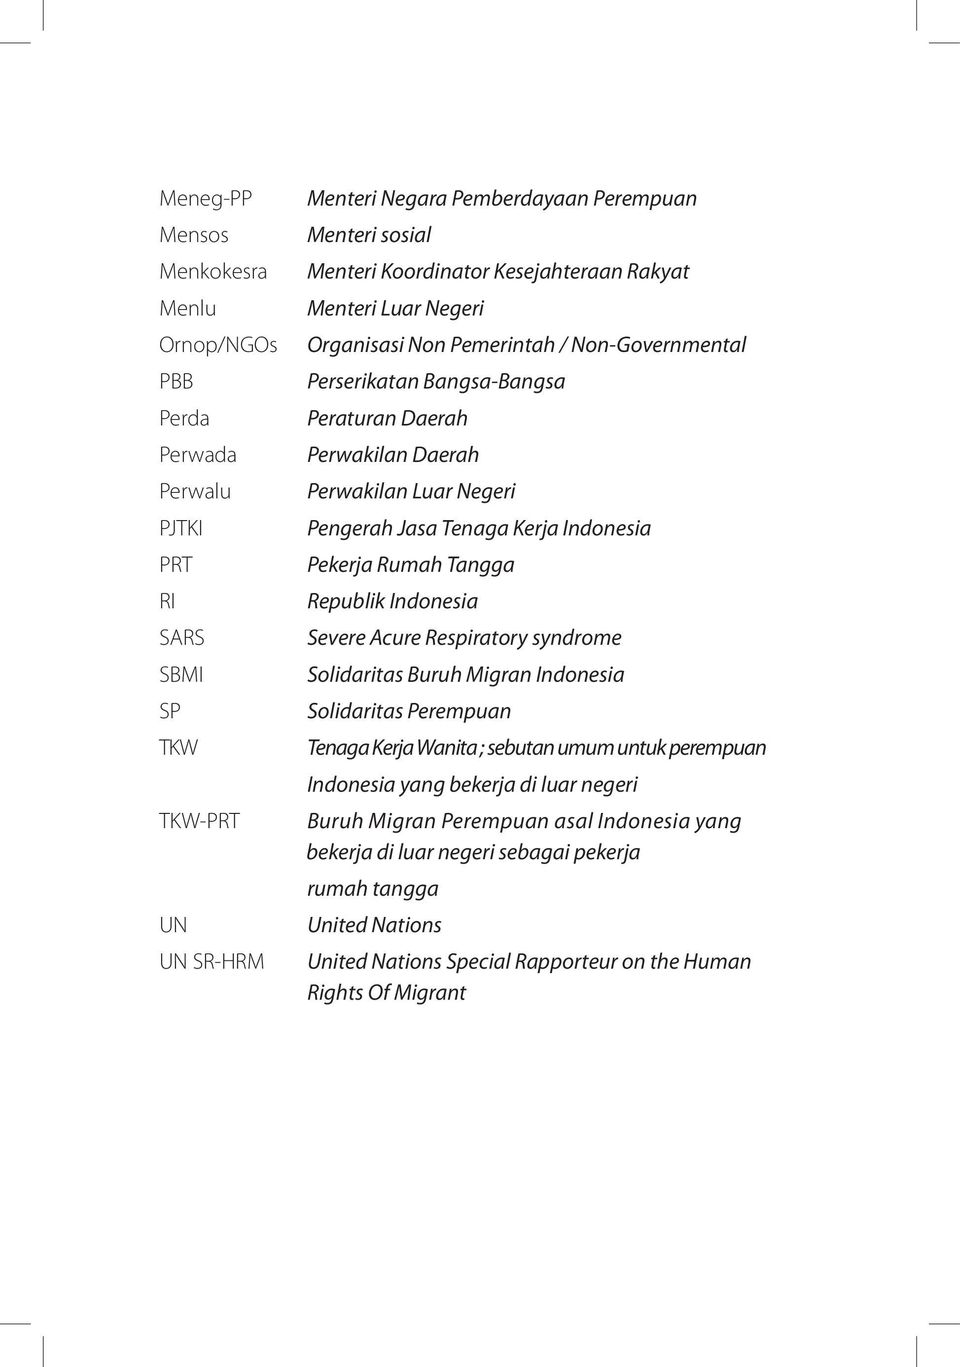 Jasa Tenaga Kerja Indonesia Pekerja Rumah Tangga Republik Indonesia Severe Acure Respiratory syndrome Solidaritas Buruh Migran Indonesia Solidaritas Perempuan Tenaga Kerja Wanita ; sebutan umum untuk